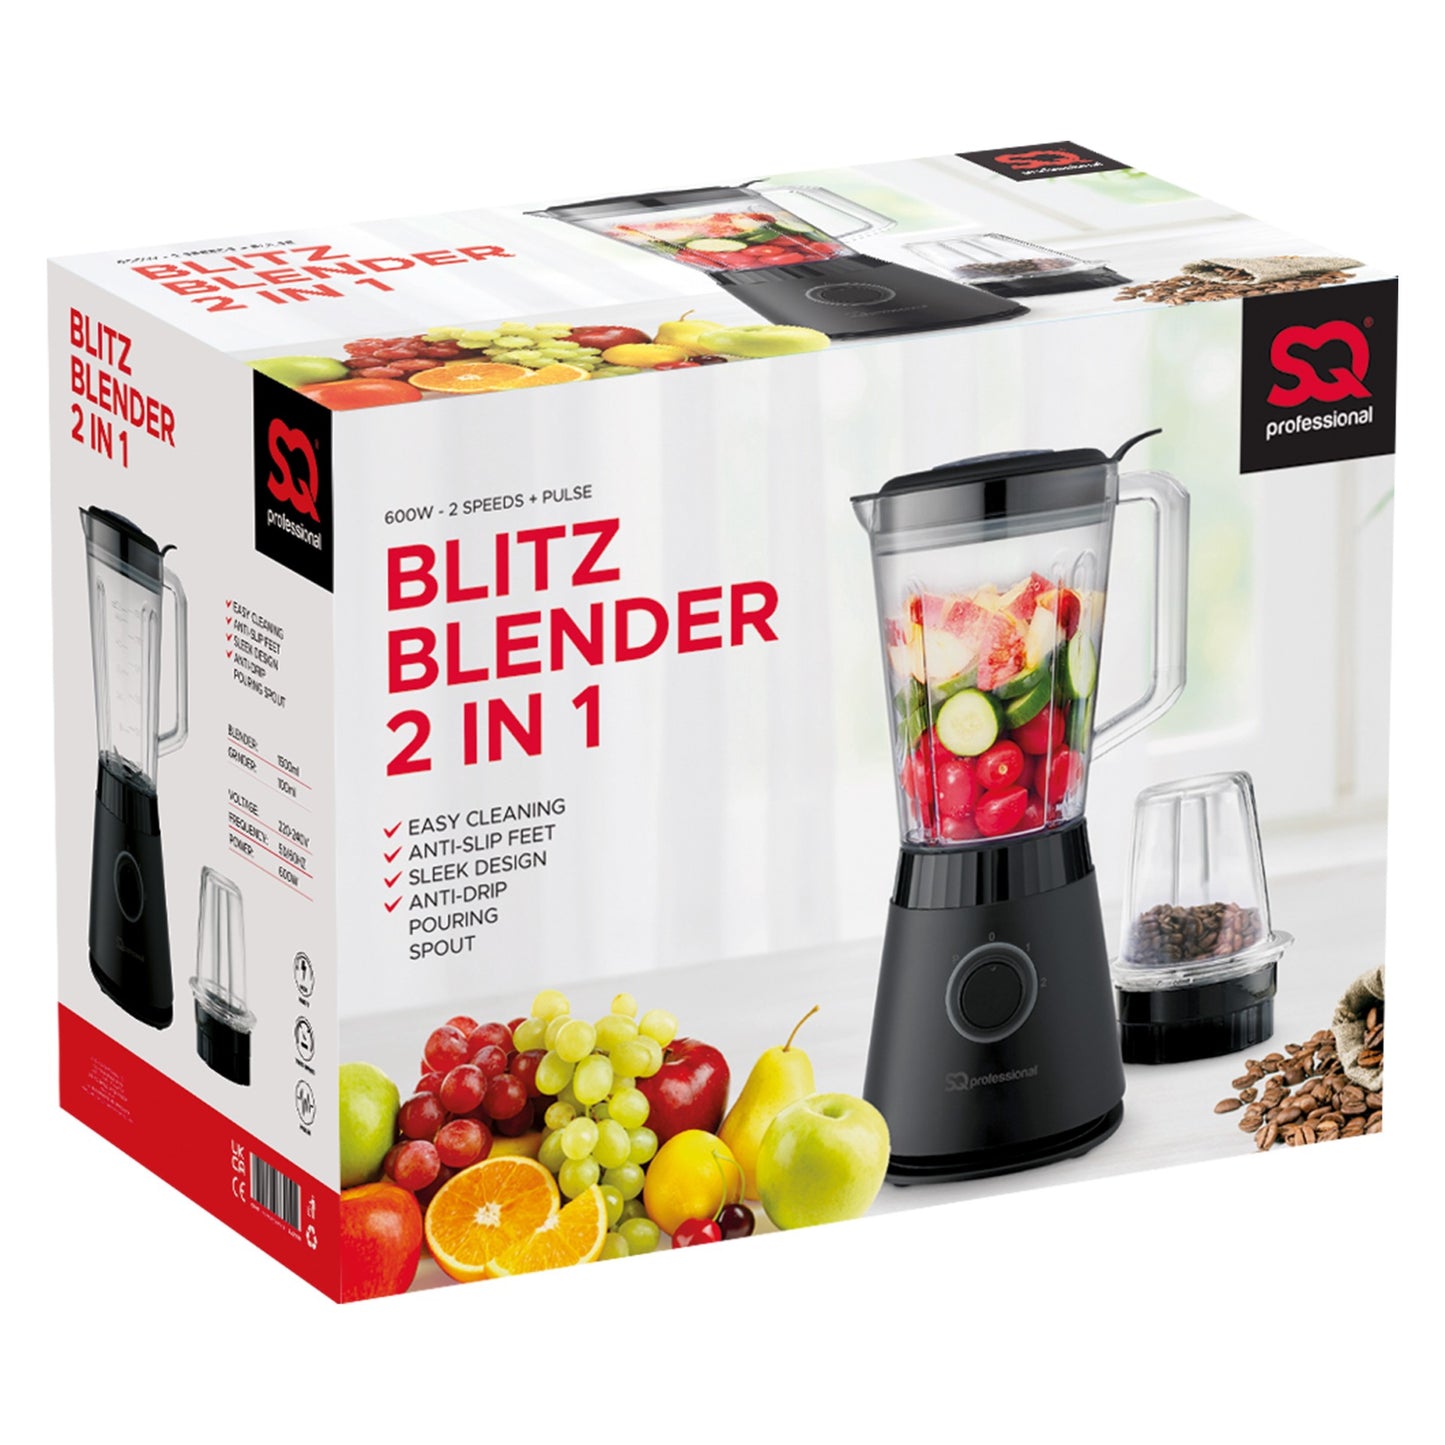 SQ Professional Blitz Blender & Grinder 2 in 1 Black 600W 10957 A (Parcel Rate)